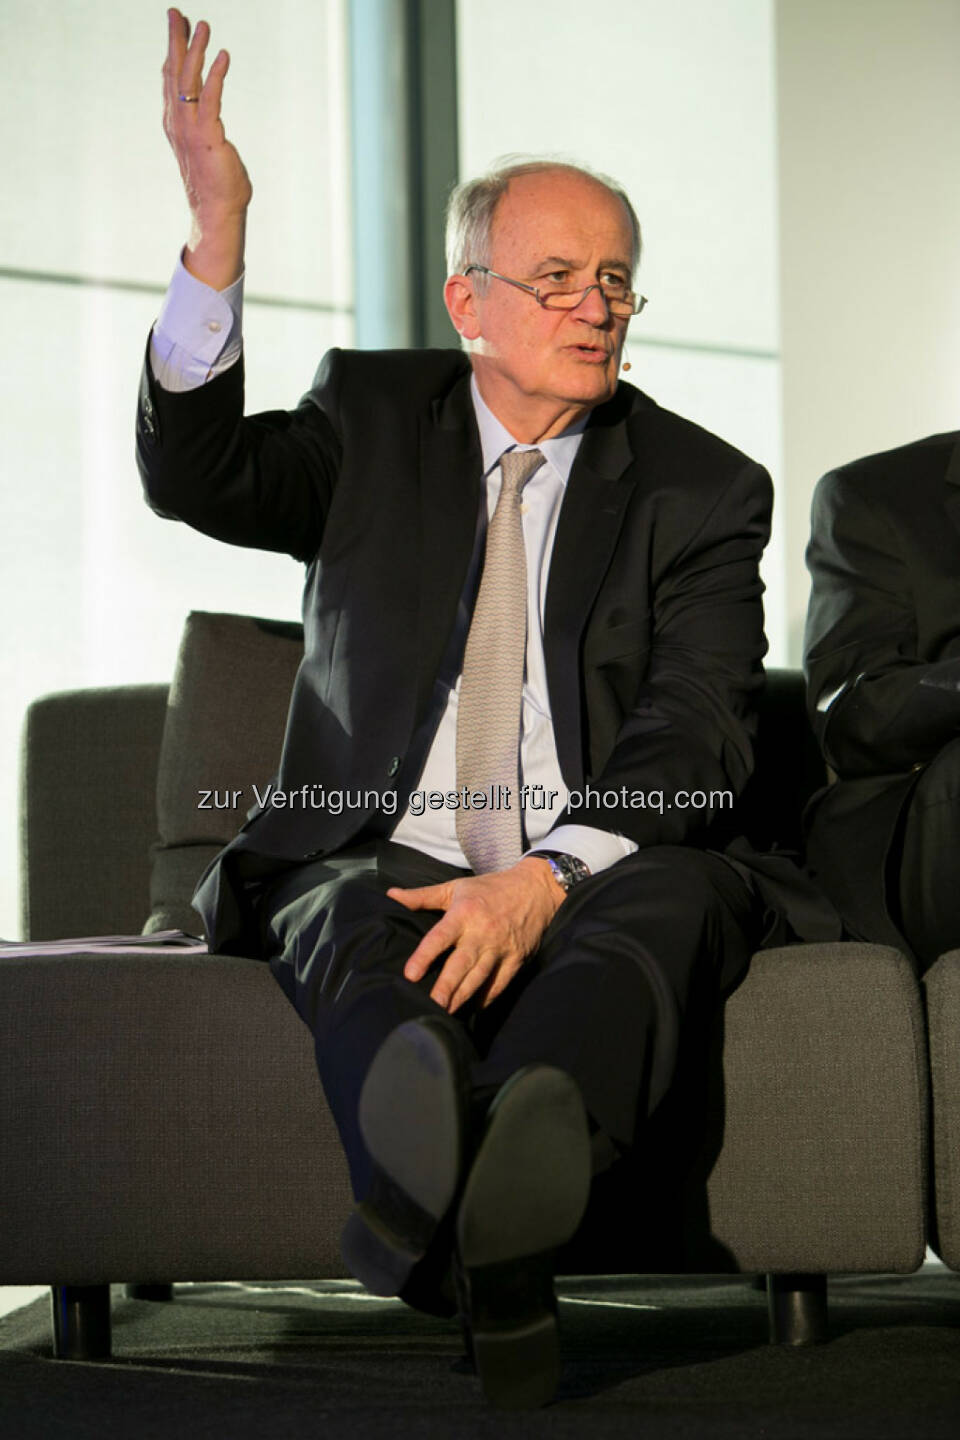 Karl Sevelda (Vorstandsvorsitzender Raiffeisen Bank International), http://blog.immofinanz.com/de/2015/04/21/talk-im-tower-die-vierte-russland-die-sanktionen-und-die-folgen/
